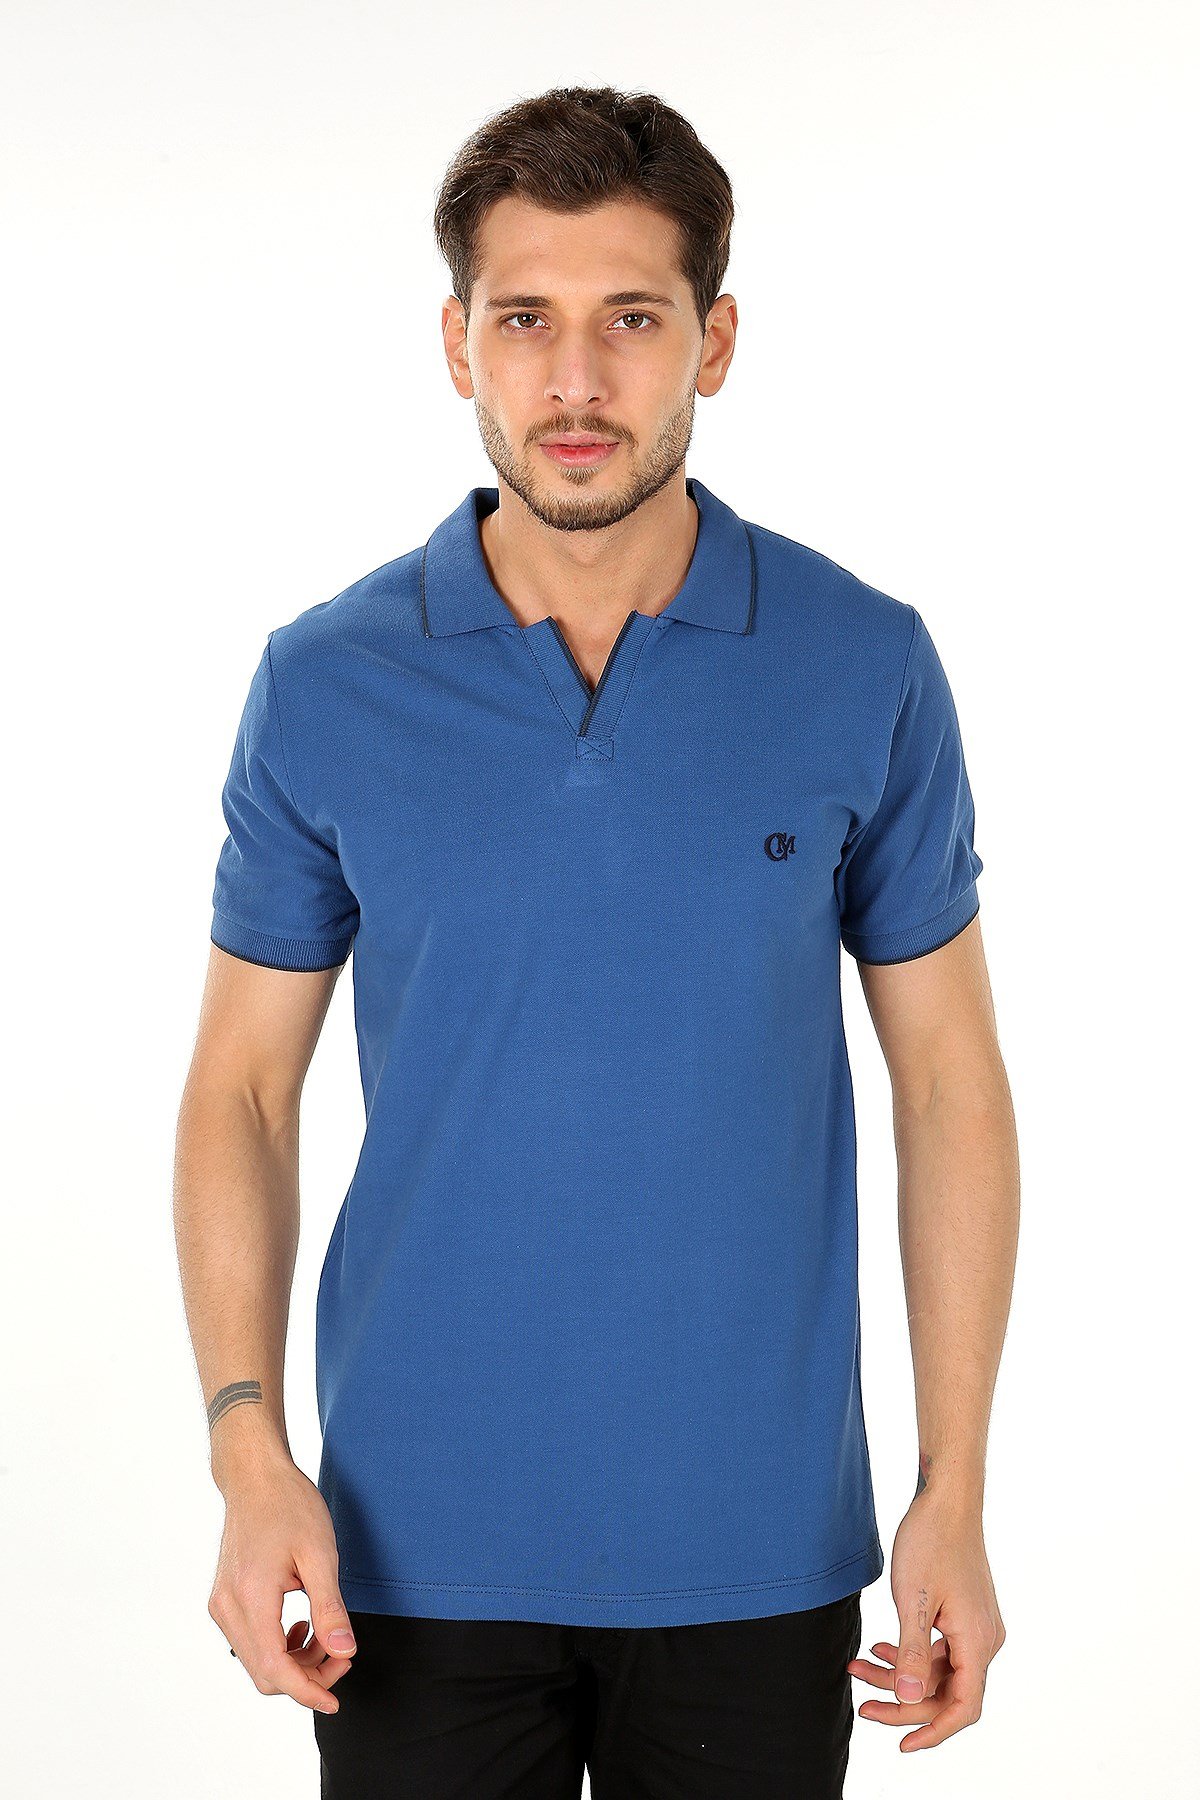 Gece Mavisi Renk Şeritli V Yaka Polo T-Shirt Modelleri ve Fiyatları